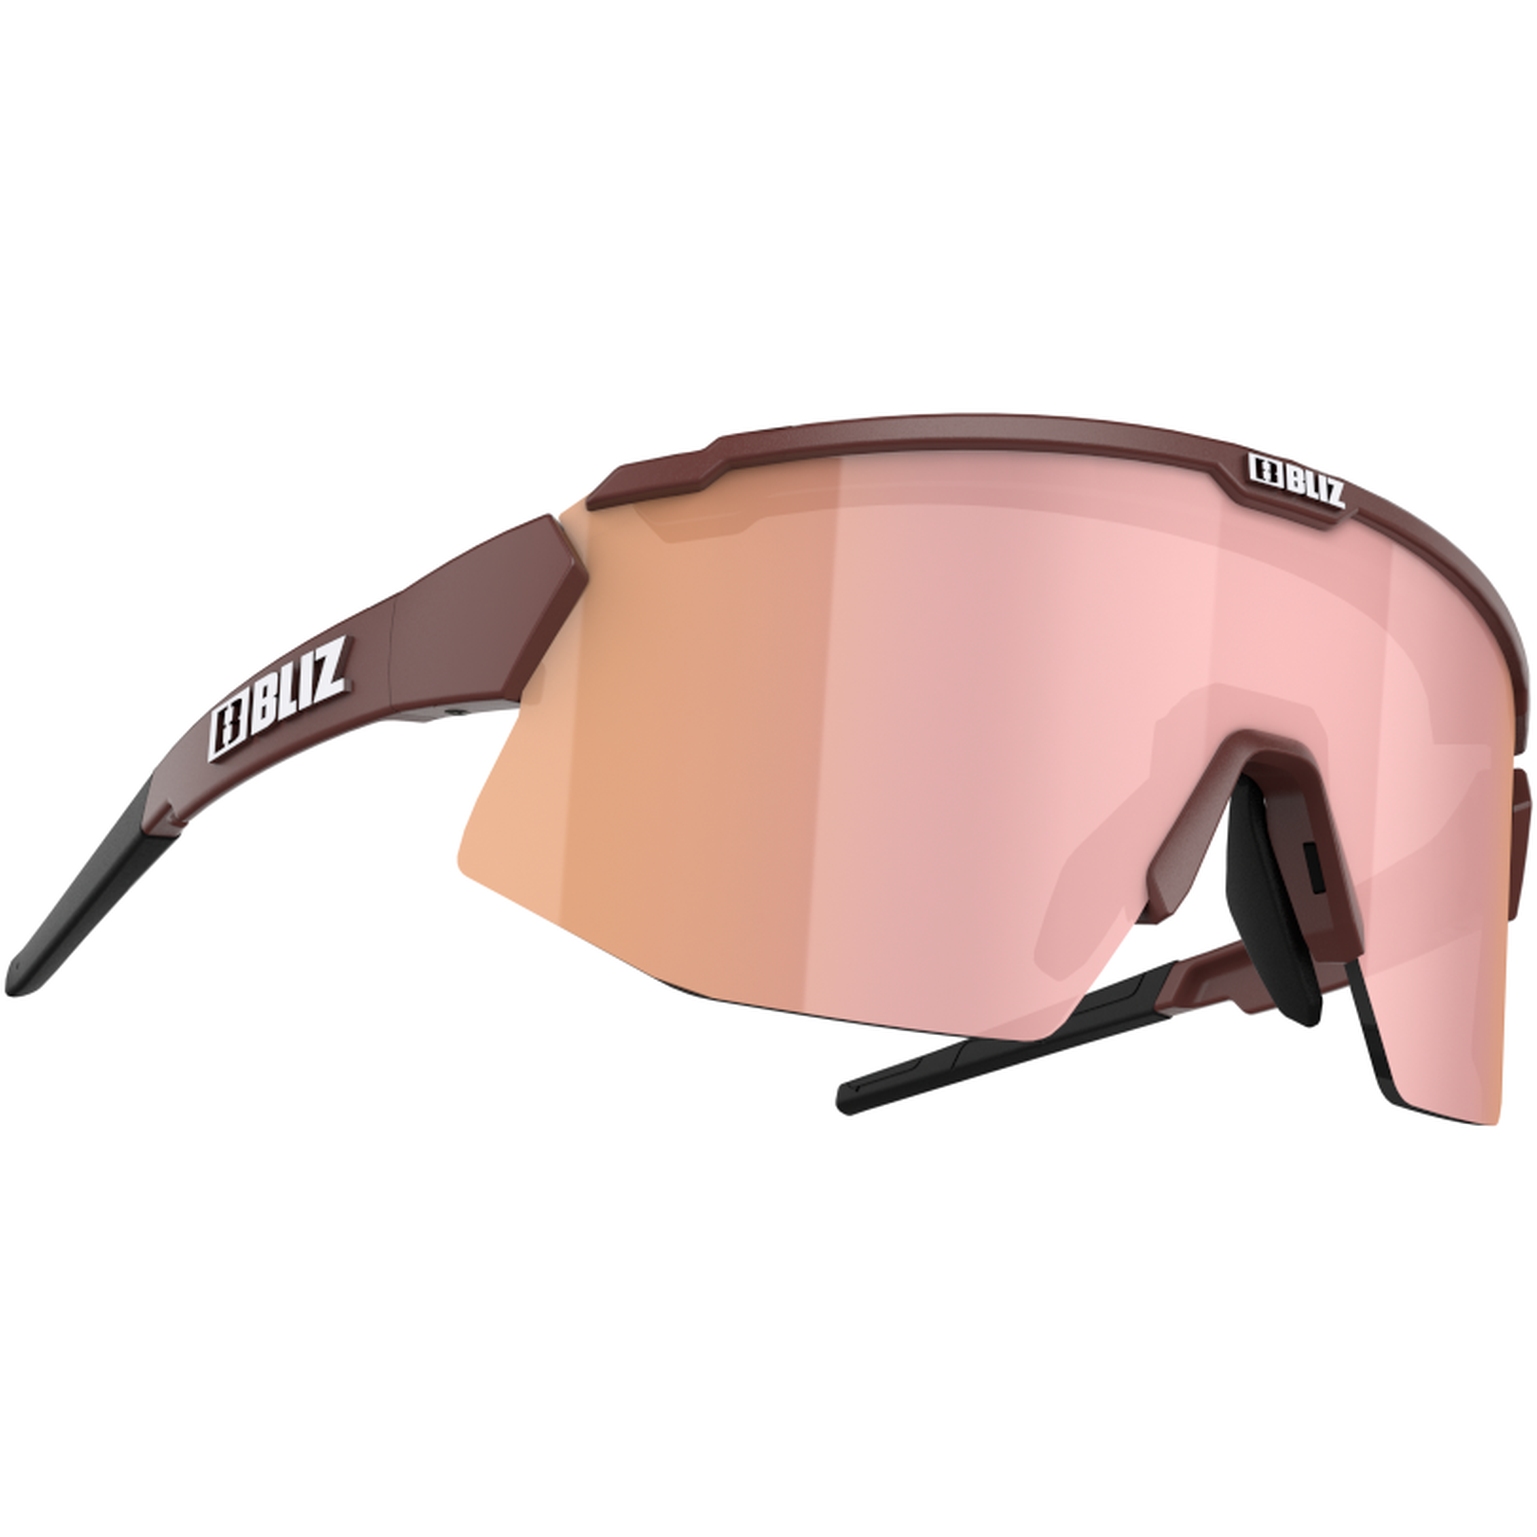 Produktbild von Bliz Breeze Small Brille - Matt Burgundy Brown with Rose Multi + Pink